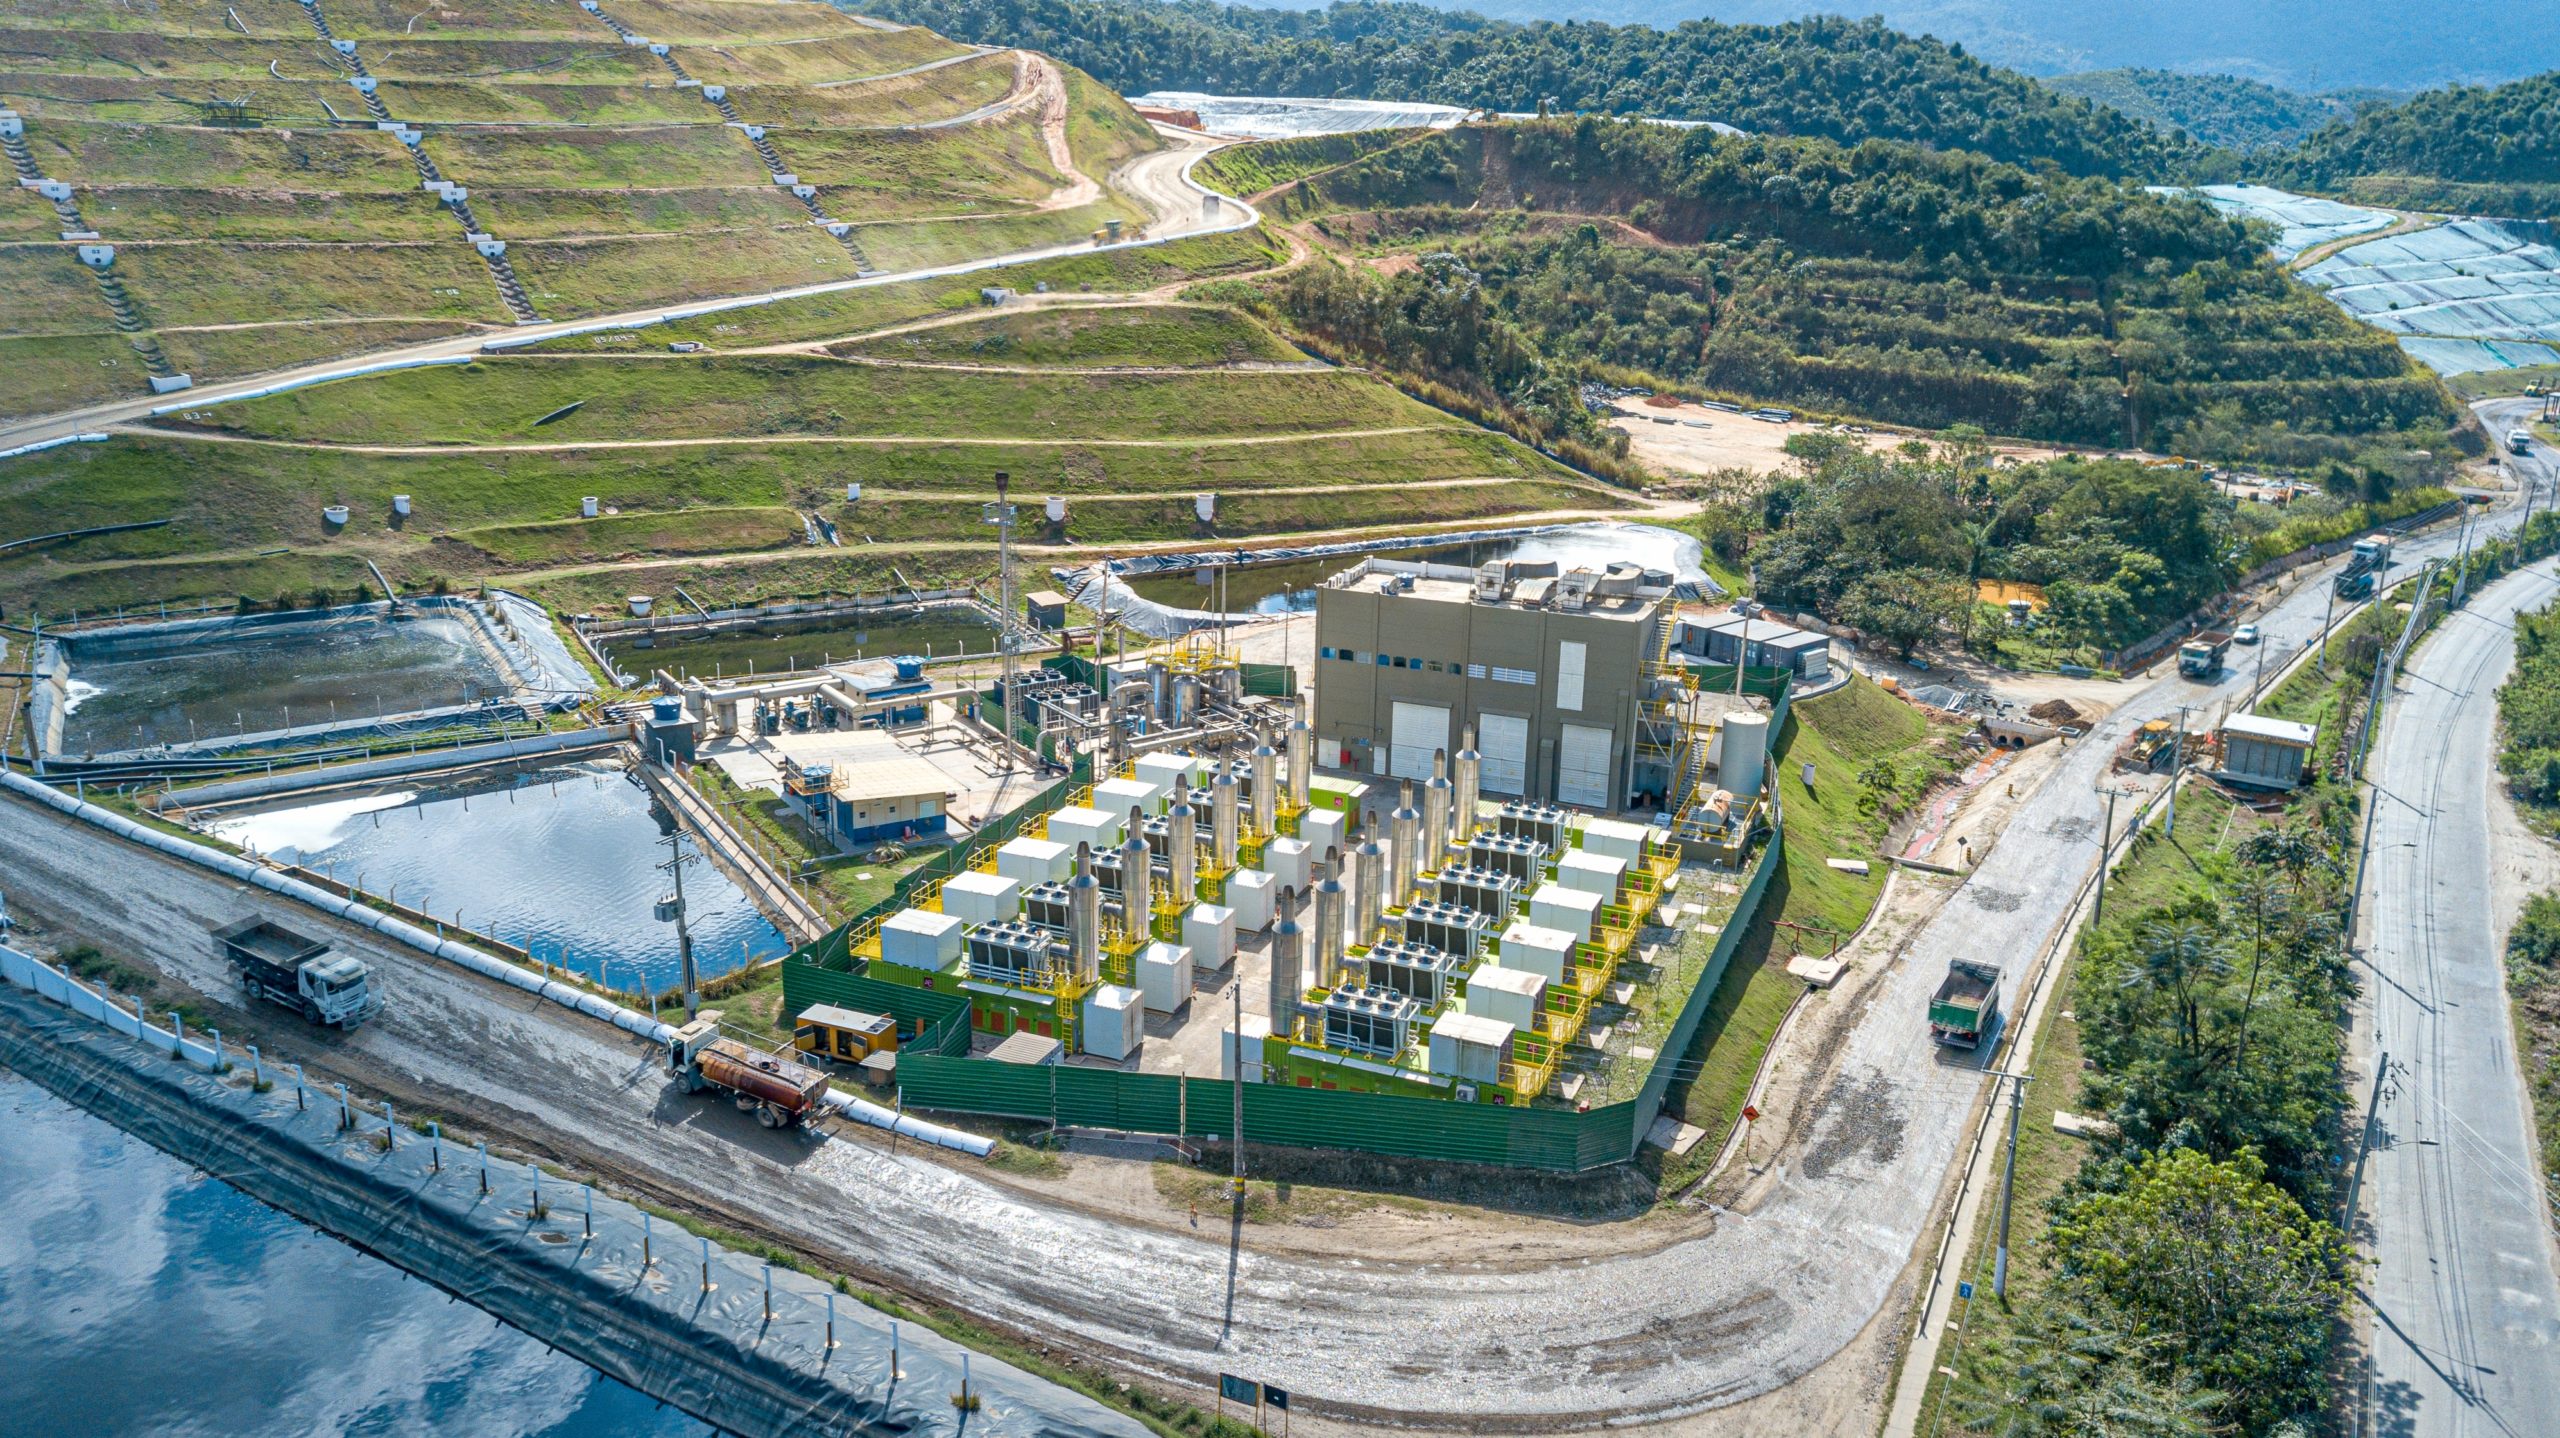 Biometano: De passivo ambiental, lixo pode se tornar solução para energia do futuro. Na imagem: Vista aérea do centro de tratamento de resíduos da Orizon em Nova Iguaçu, na baixada fluminense (Foto: Divulgação)